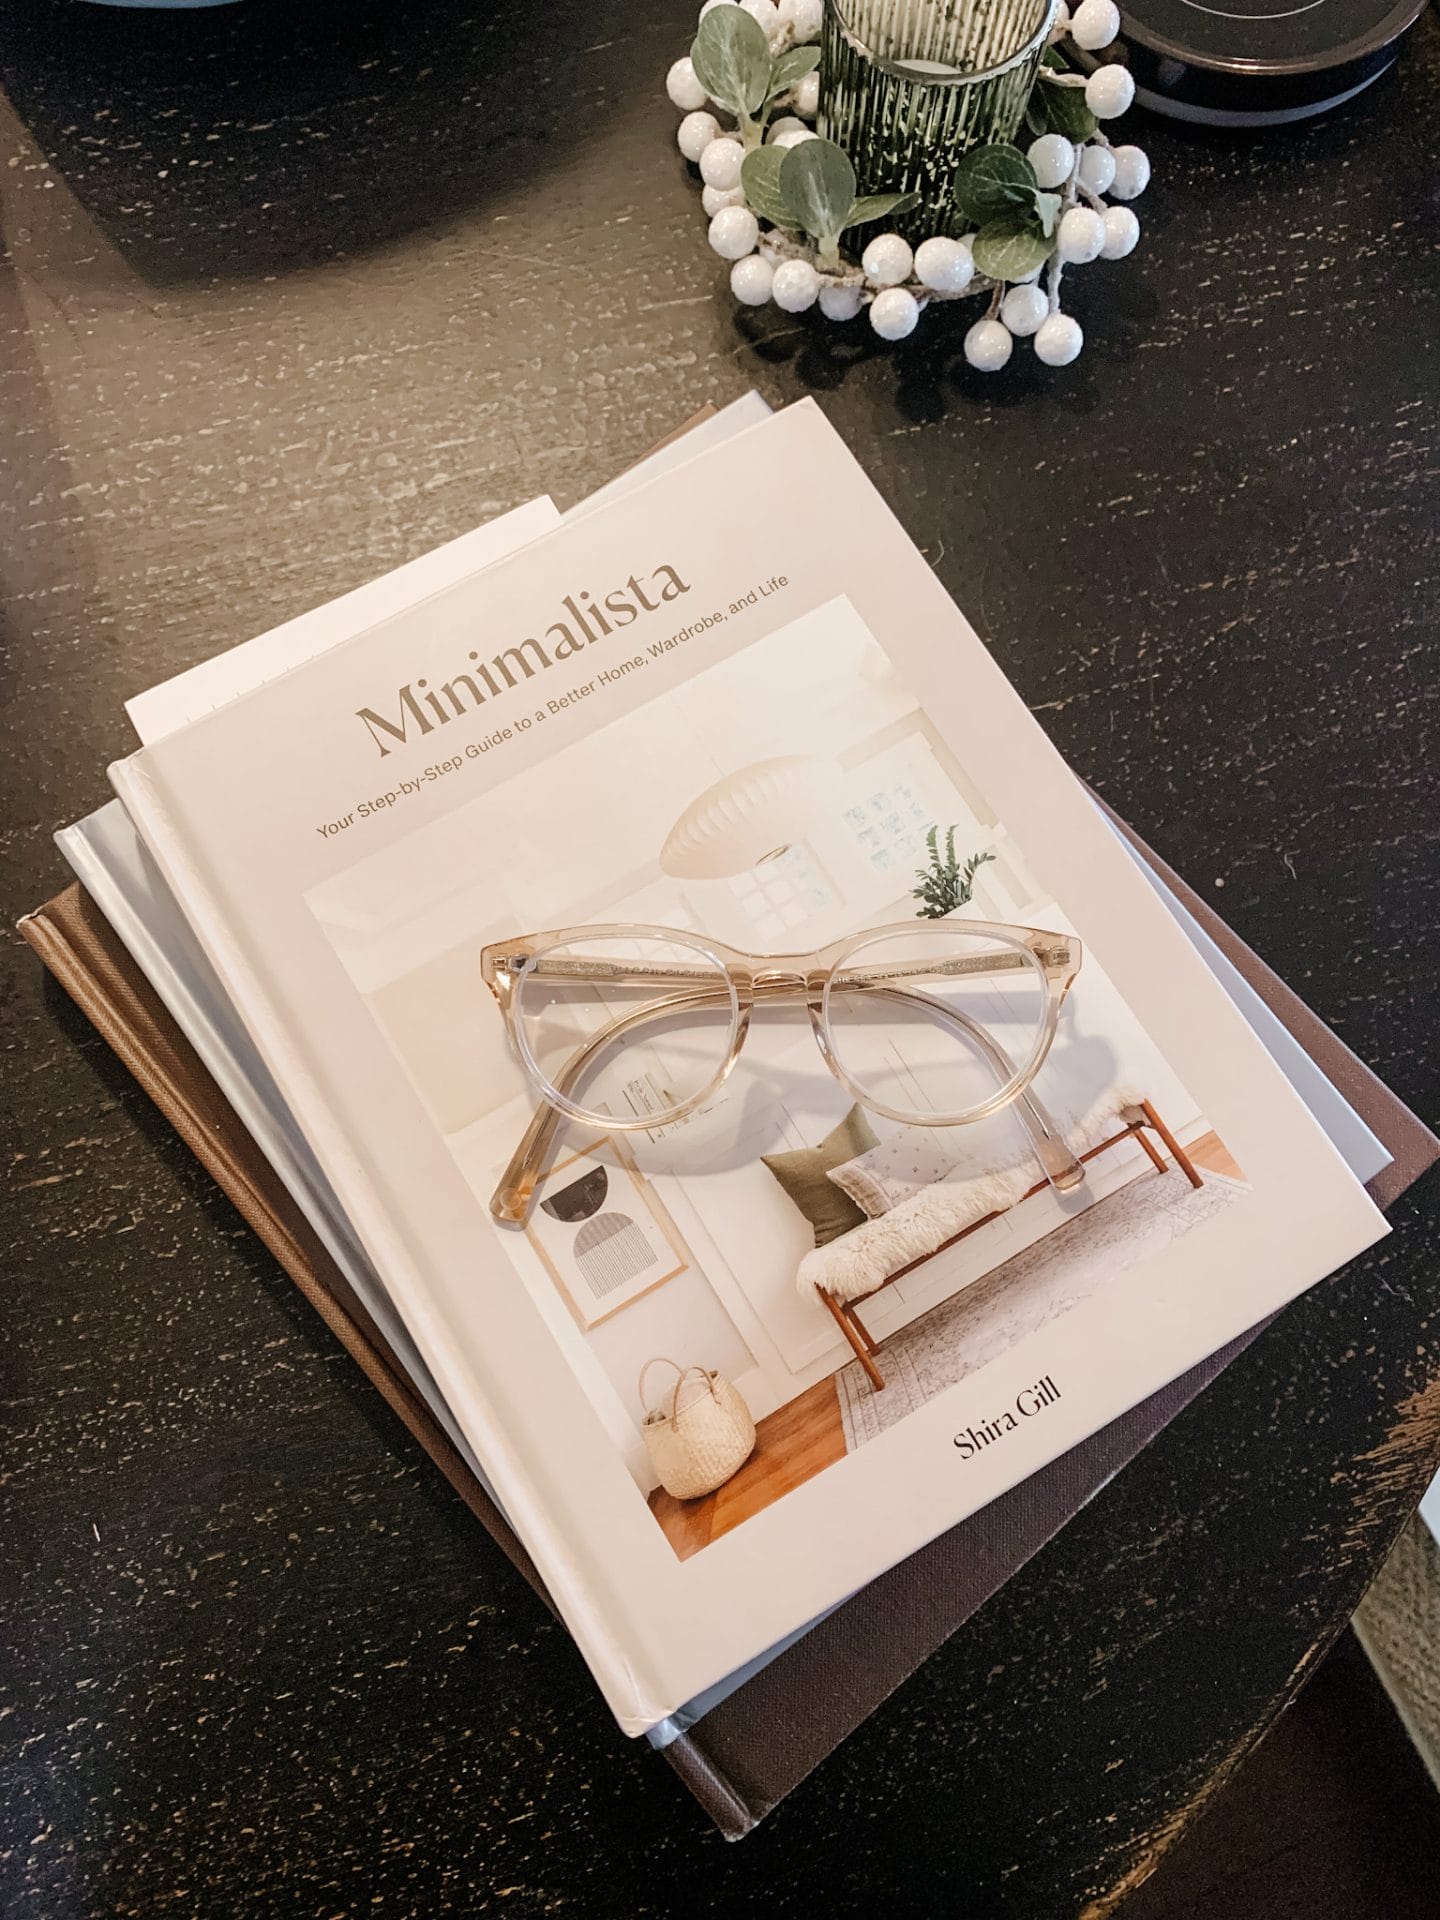 Decor Updates, Minimalista Book, Glasses, Wreath Ornament 